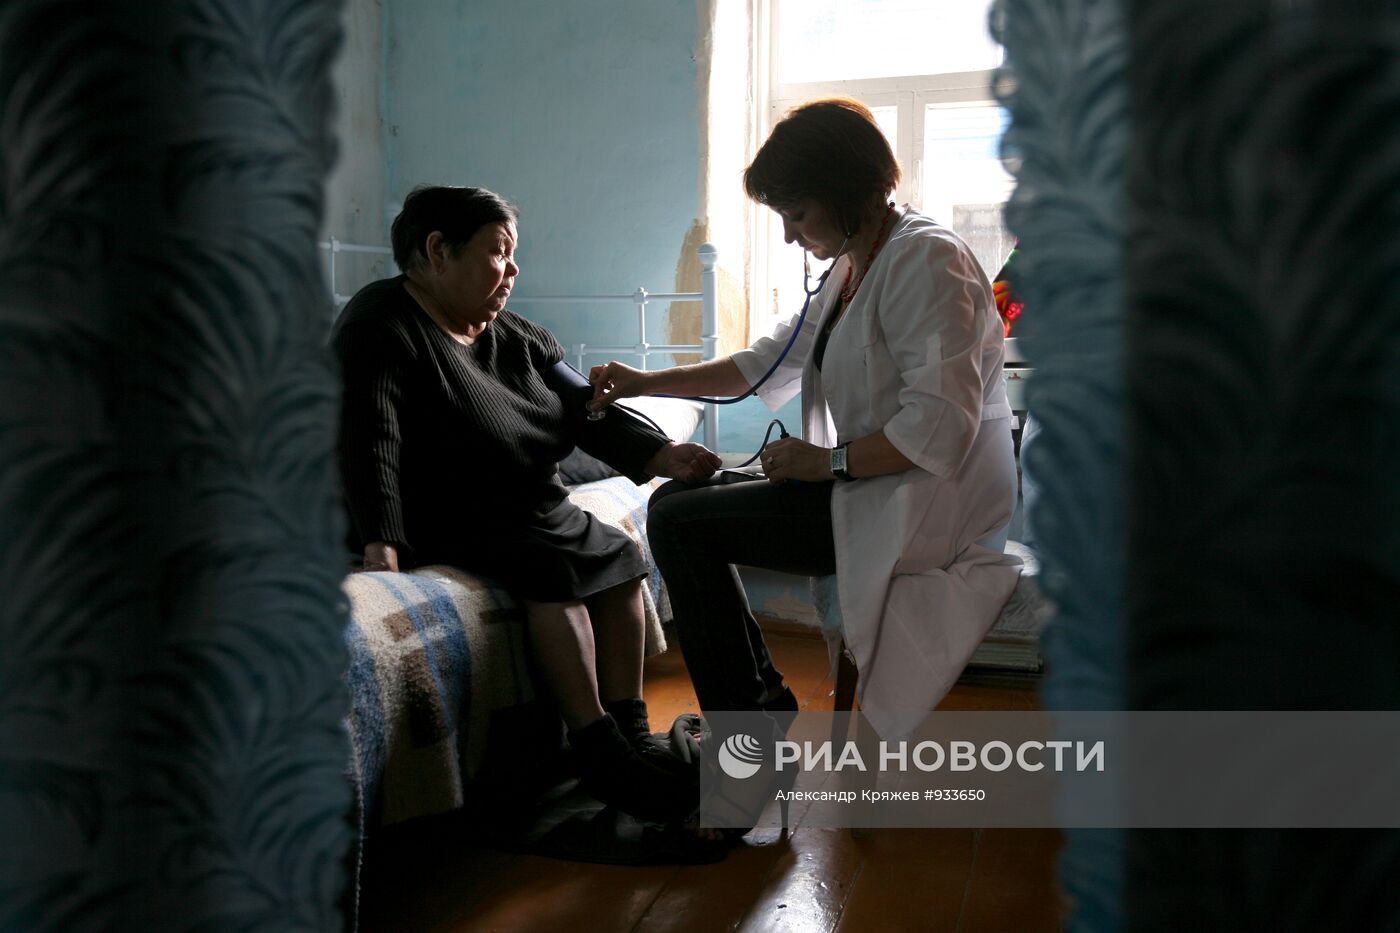 Работа сельской амбулатории в Новосибирской области